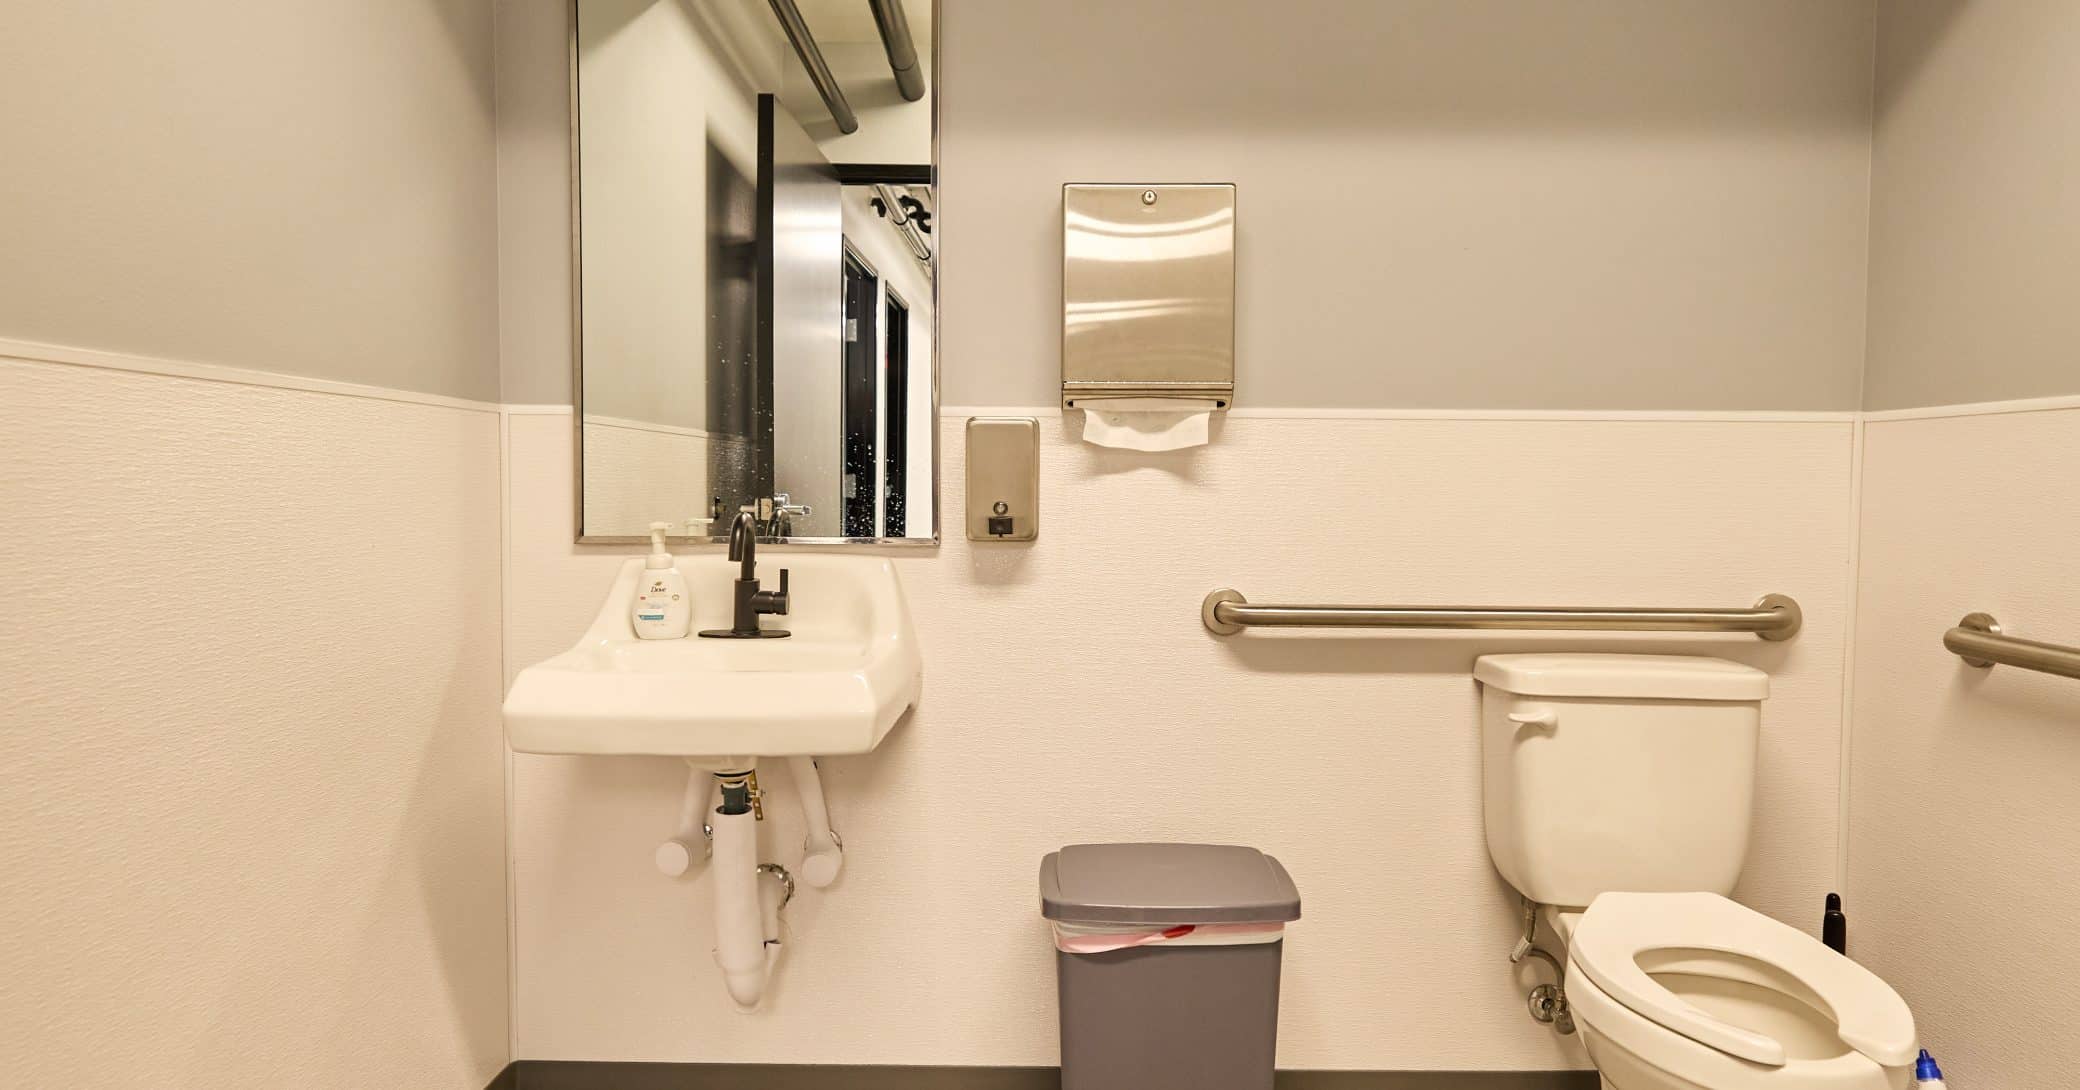 Renovated office bathroom by Las Vegas general contractor, Kalb Industries.